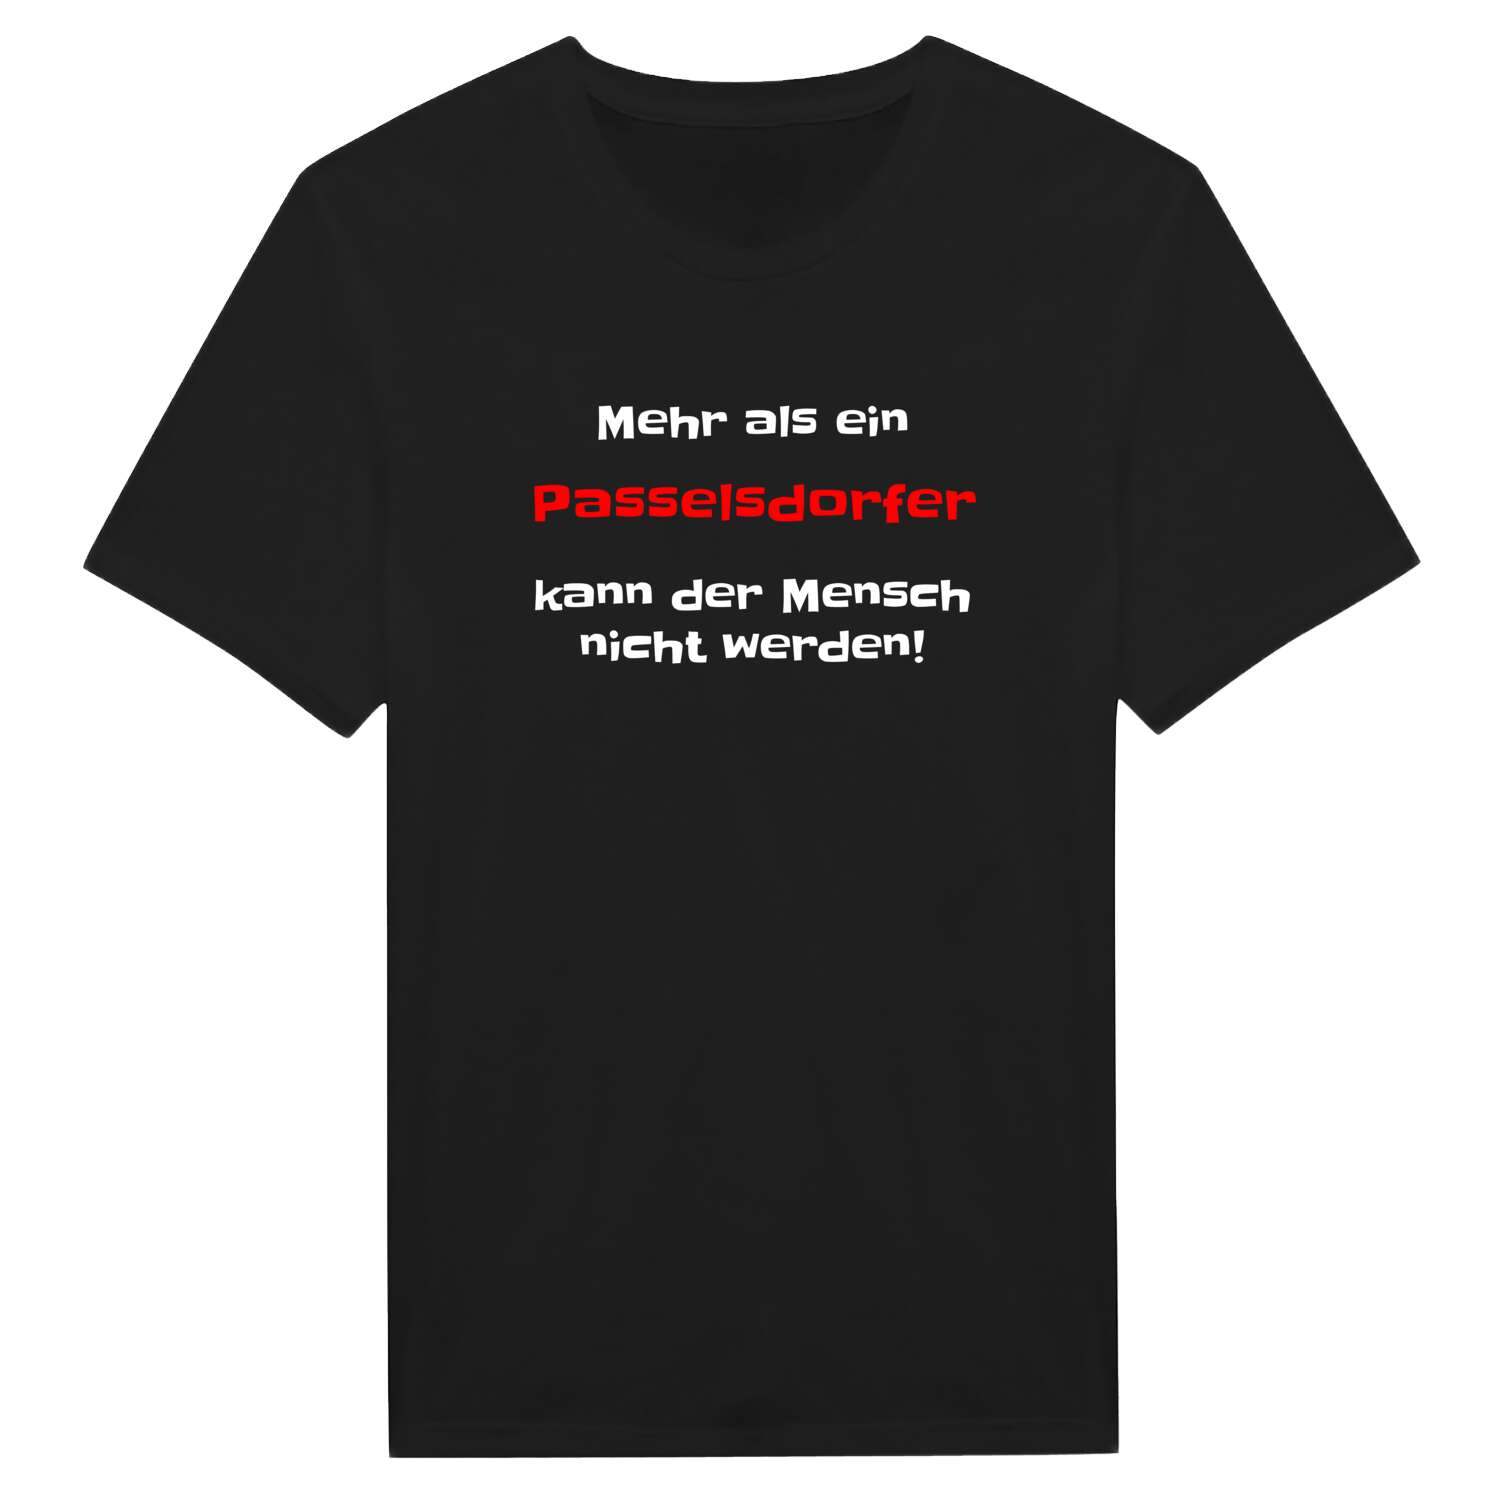 Passelsdorf T-Shirt »Mehr als ein«